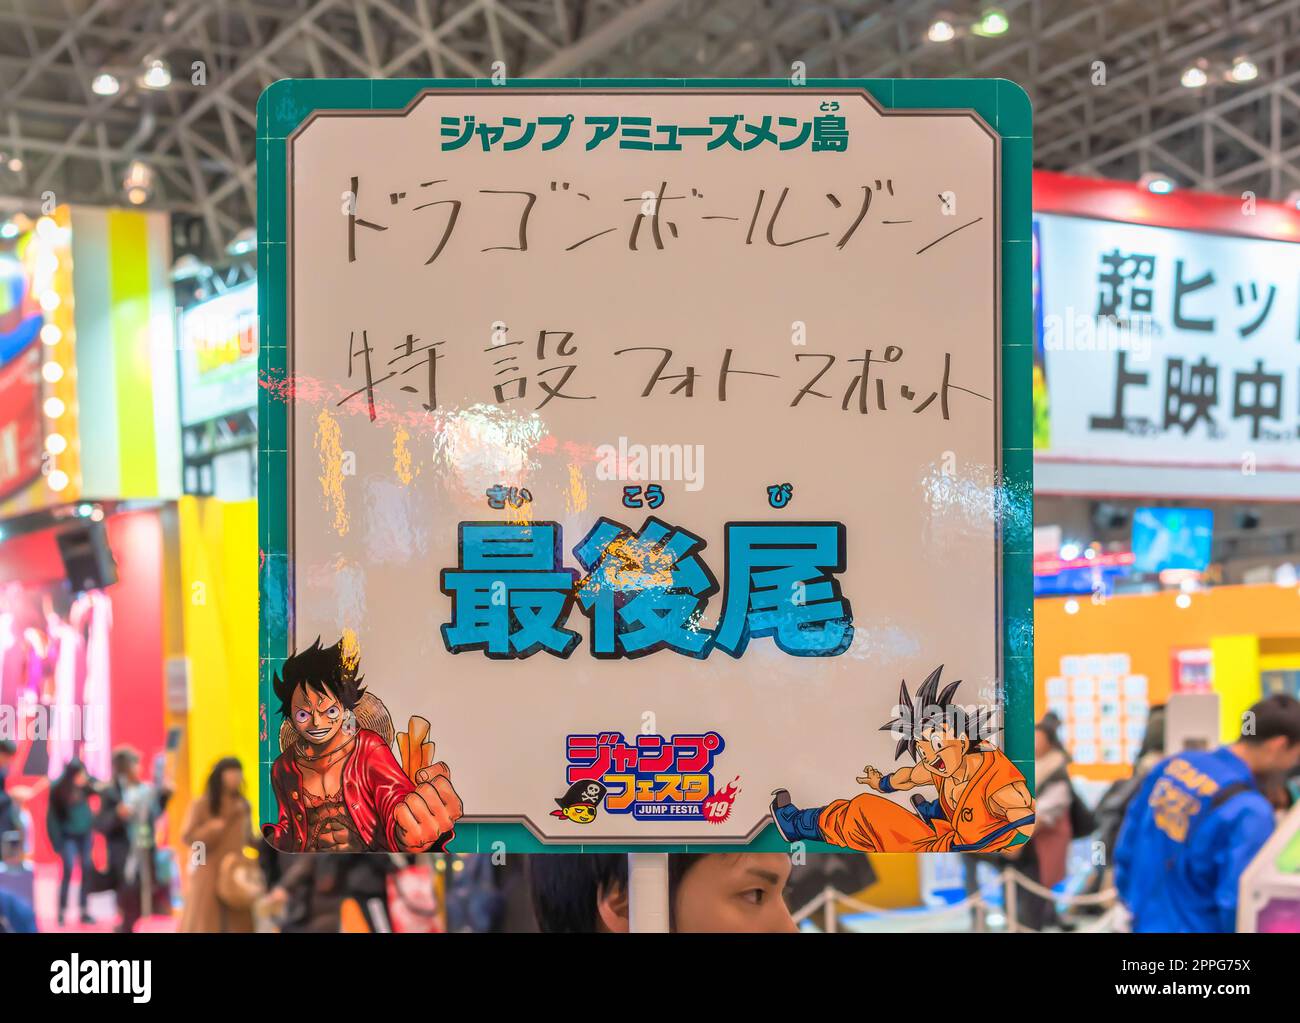 chiba, giappone - 22 dicembre 2018: Cartello indicante la fine della coda per il posto fotografico della serie anime e manga giapponesi di Dragon Ball durante la convention annuale Jump Festa 19. Foto Stock